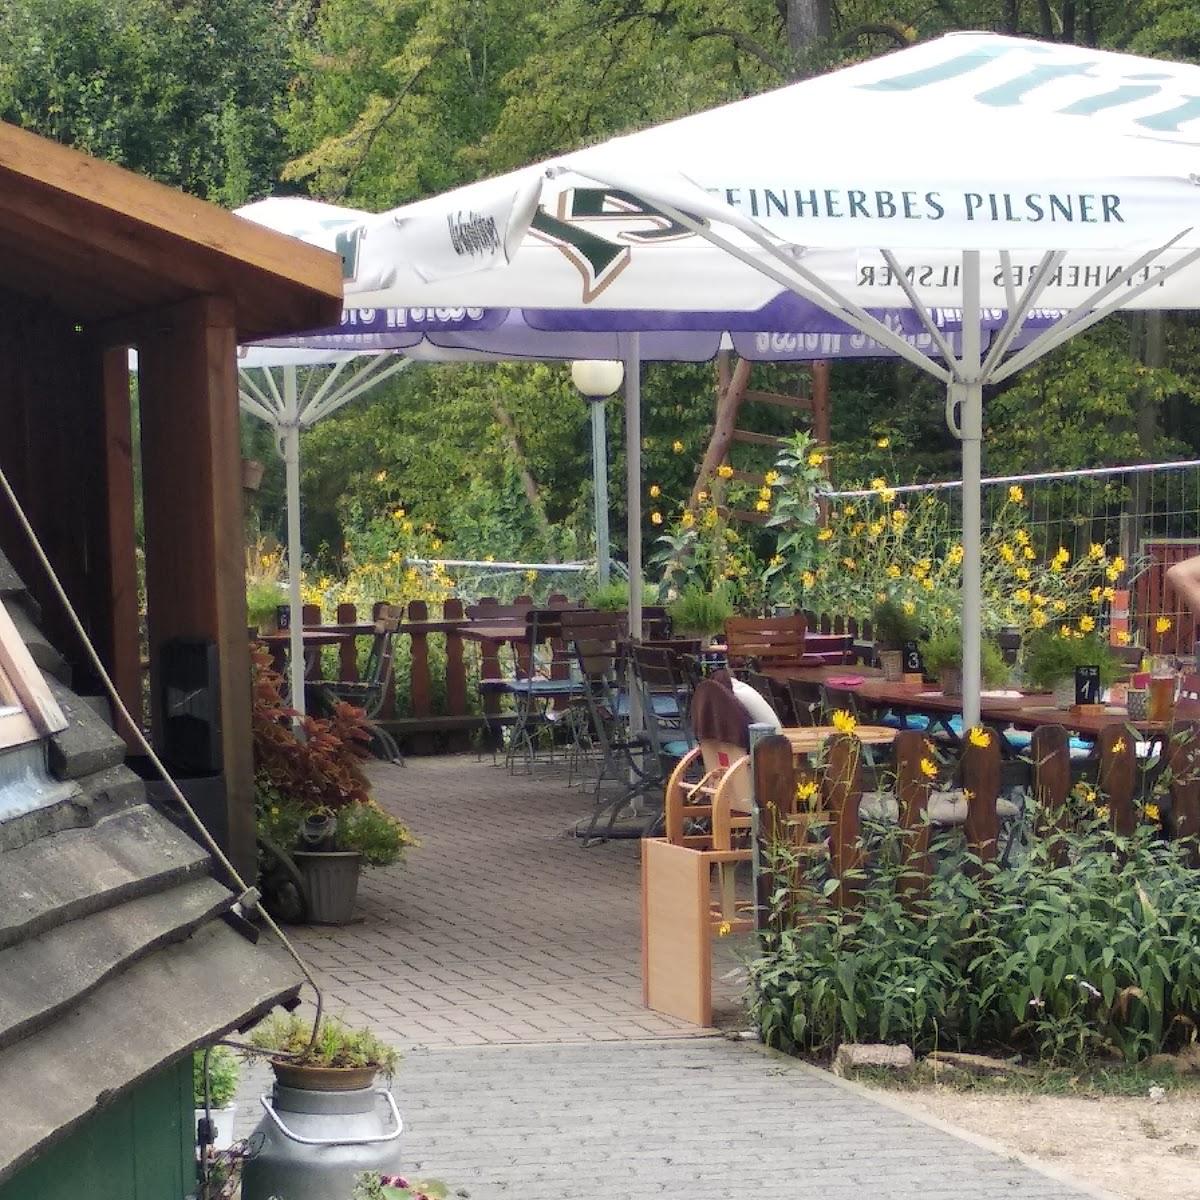 Restaurant "Forsthof Waidmannsheil" in Bennewitz